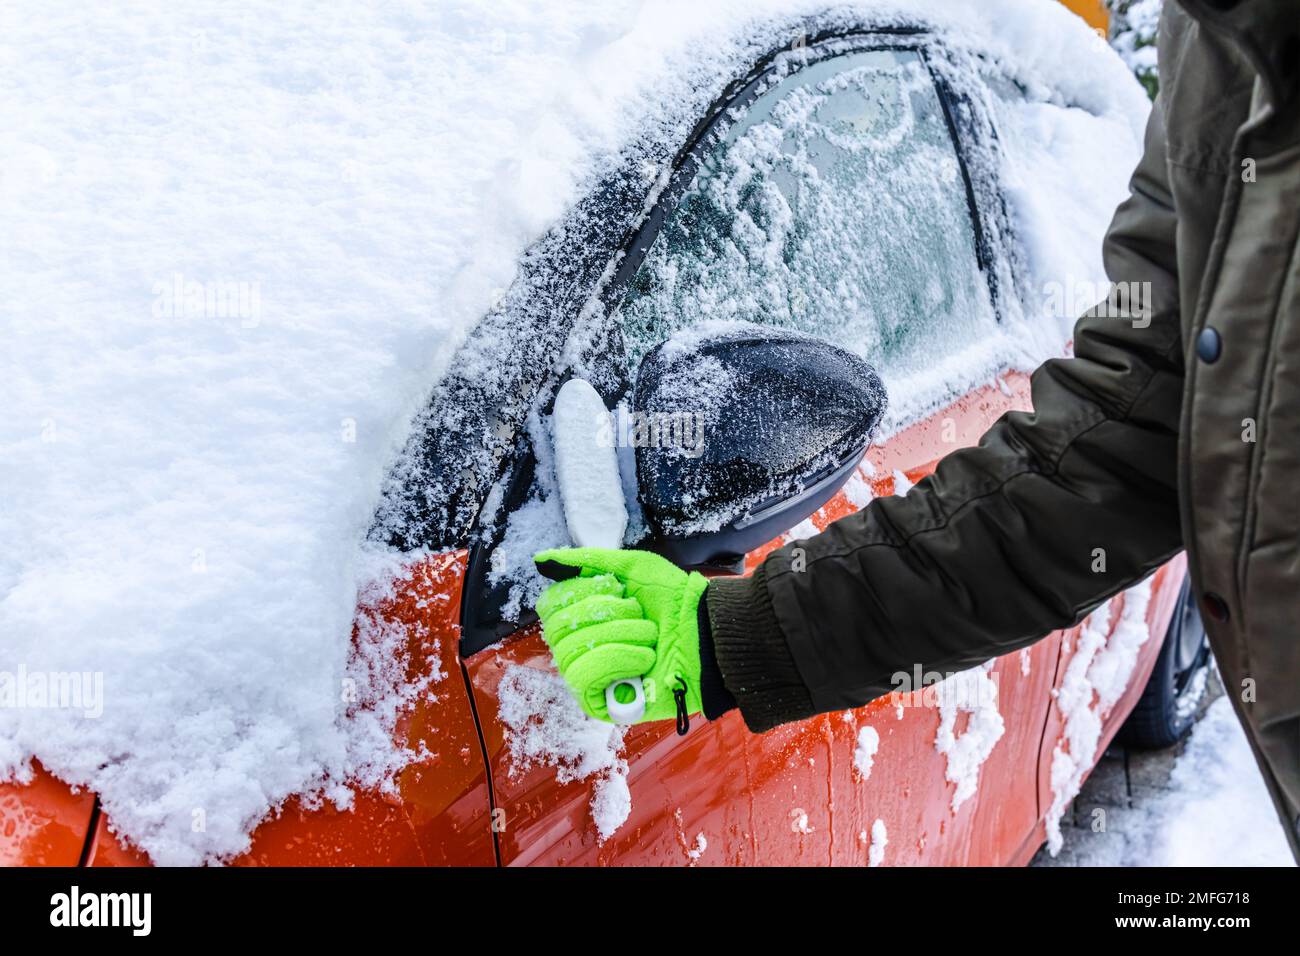 Teenager reinigt das Auto nach einem Schneefall, entfernt Schnee und kratzt Eis Stockfoto